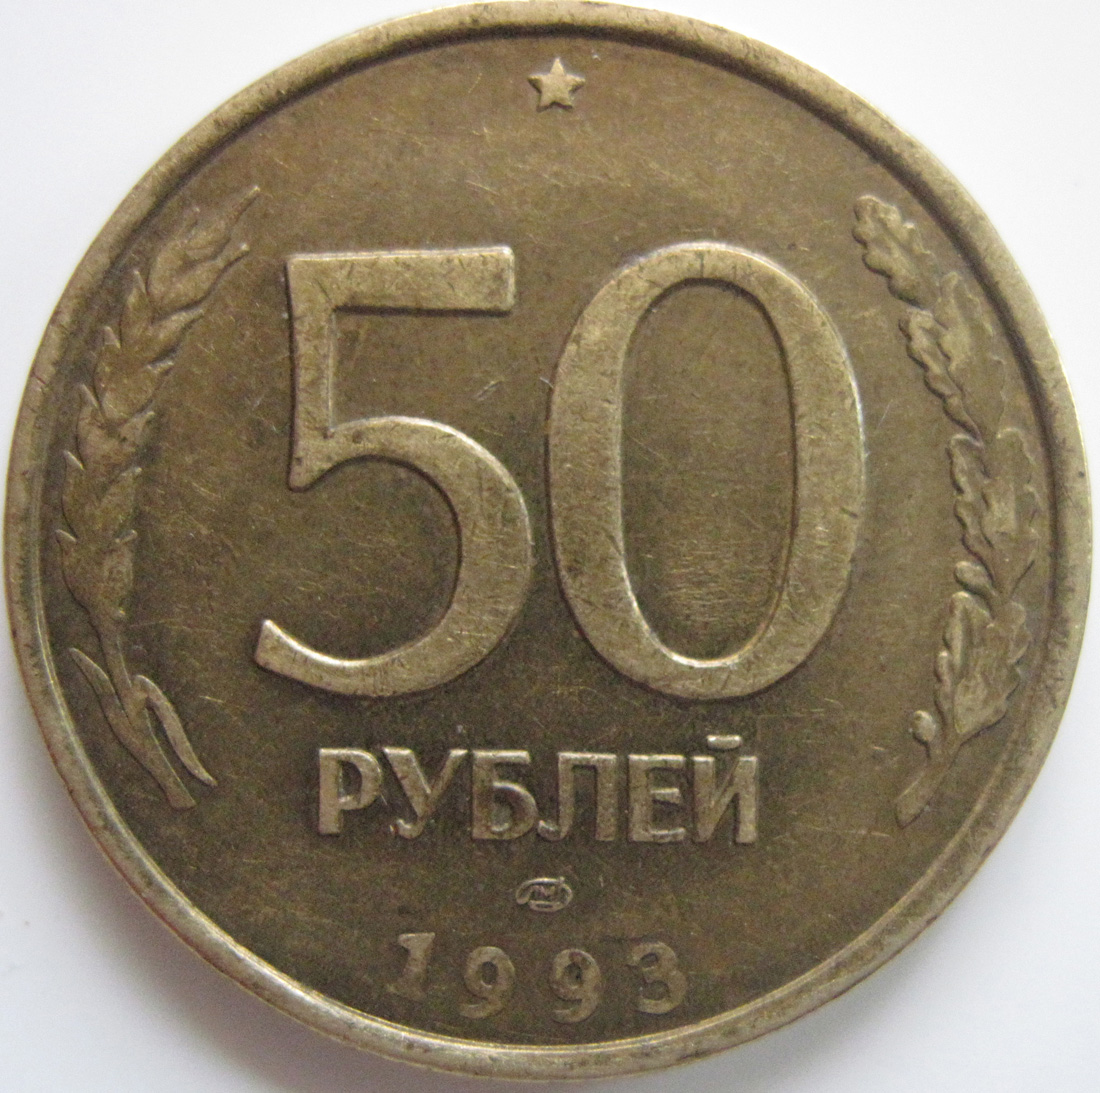 Сколько стоят пятьдесят рублей. 50 Рублей 1993 г. ЛМД , биметаллические. 50 Рублей 1993 года. Монетка 50 рублей 1993. Монеты с 1993 Аверс.